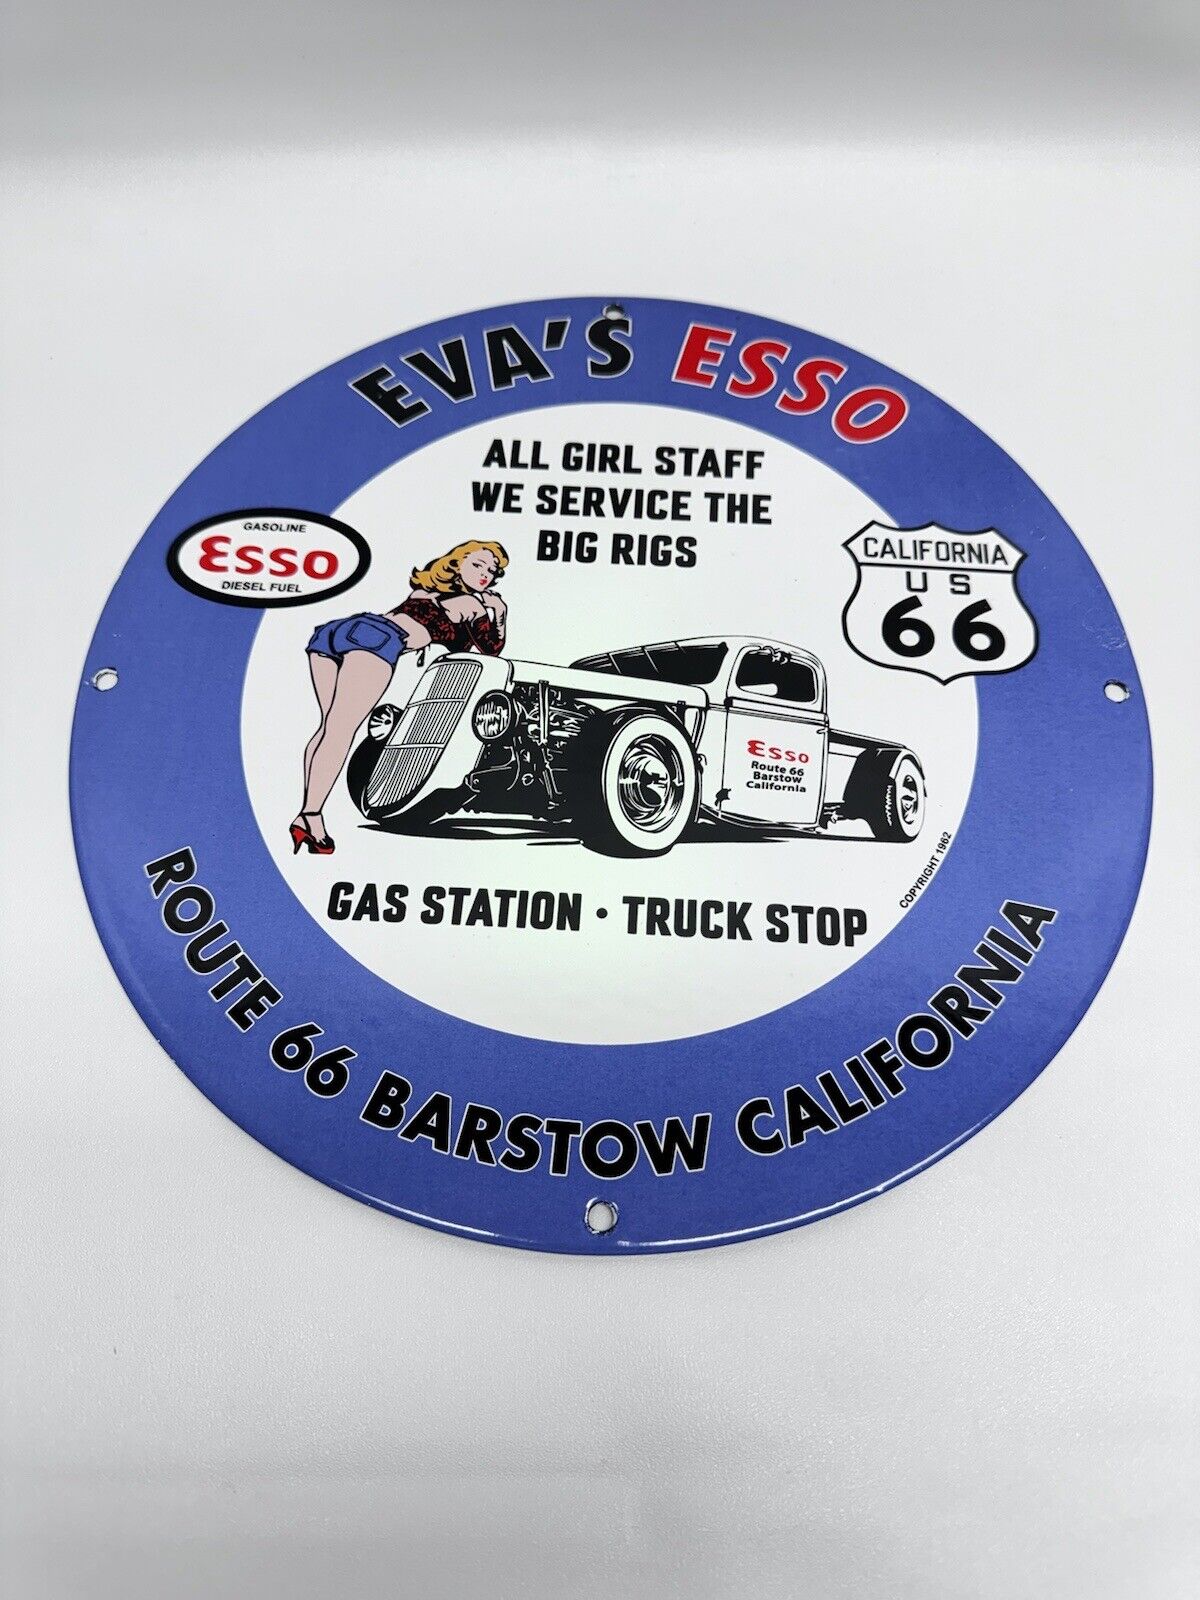 Esso Garage Gasoline Vintage Style Porcelain Enamel Service Station Sign